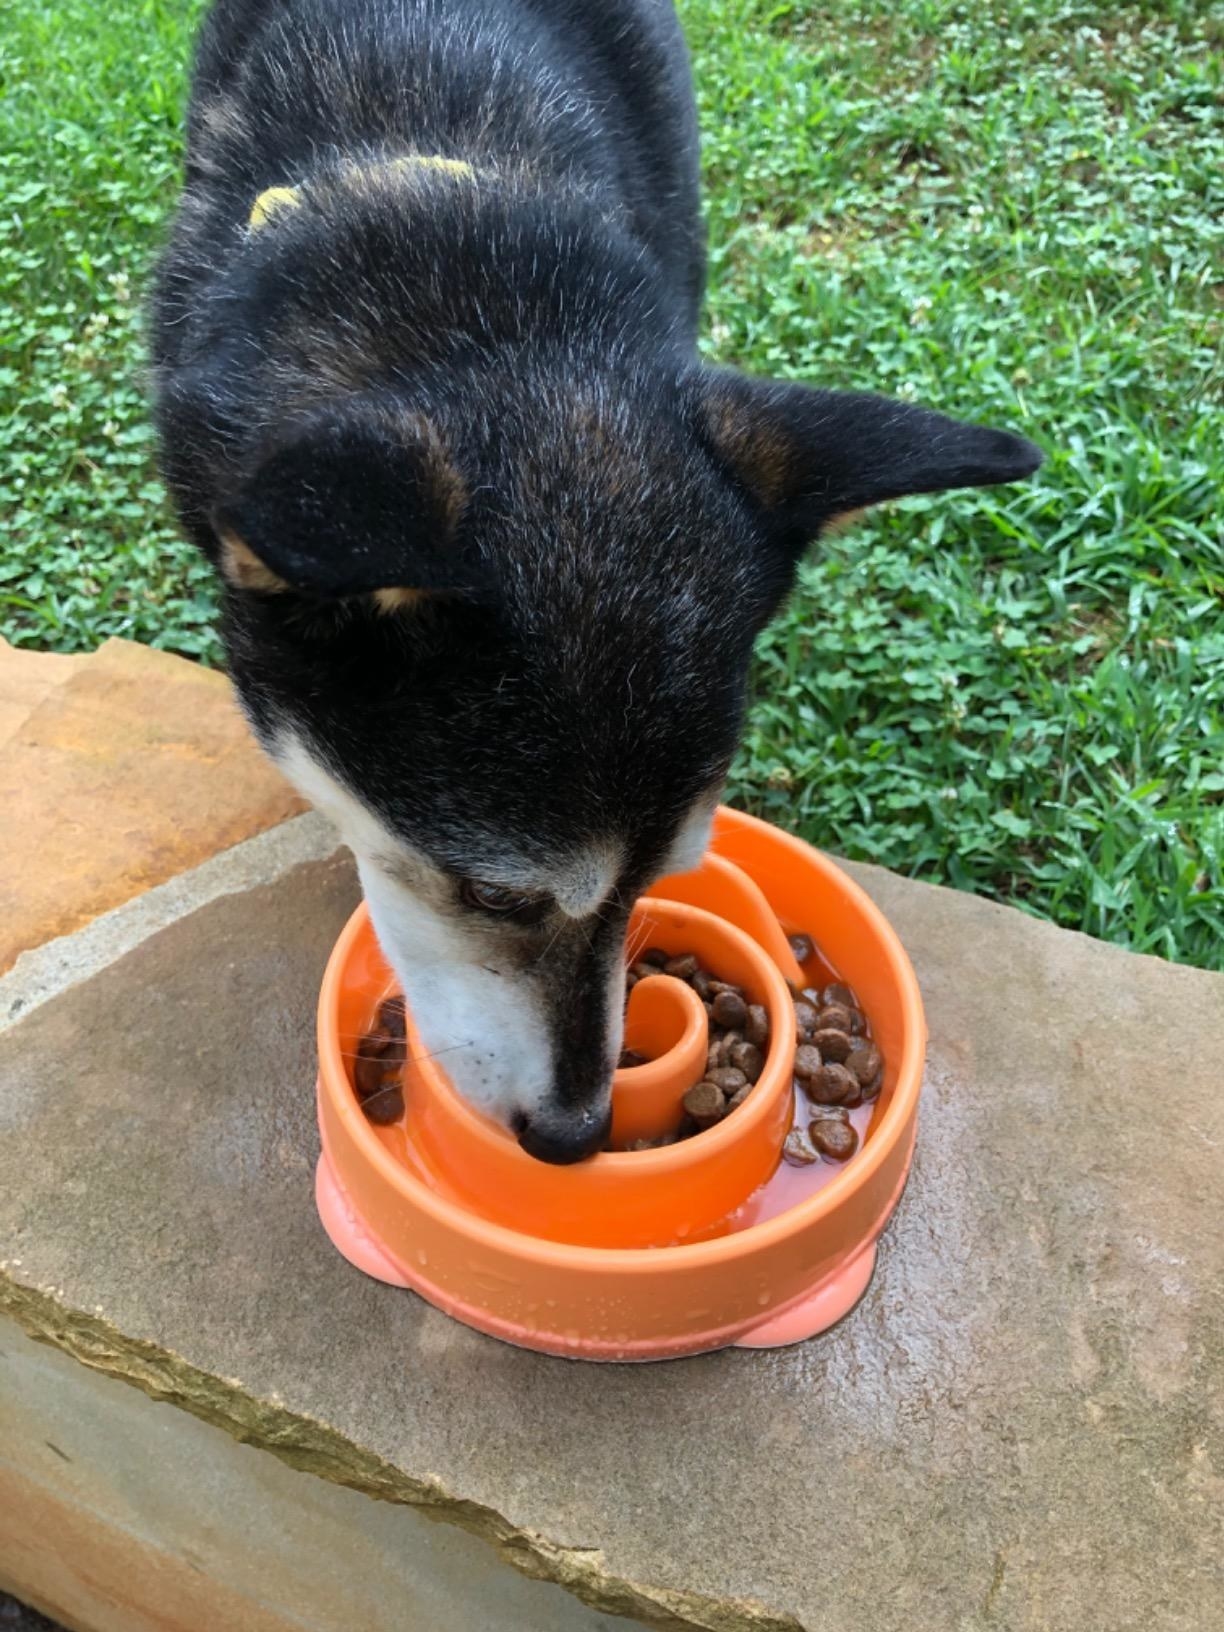 Review photo of dog enjoying the orange slow feeder bowl